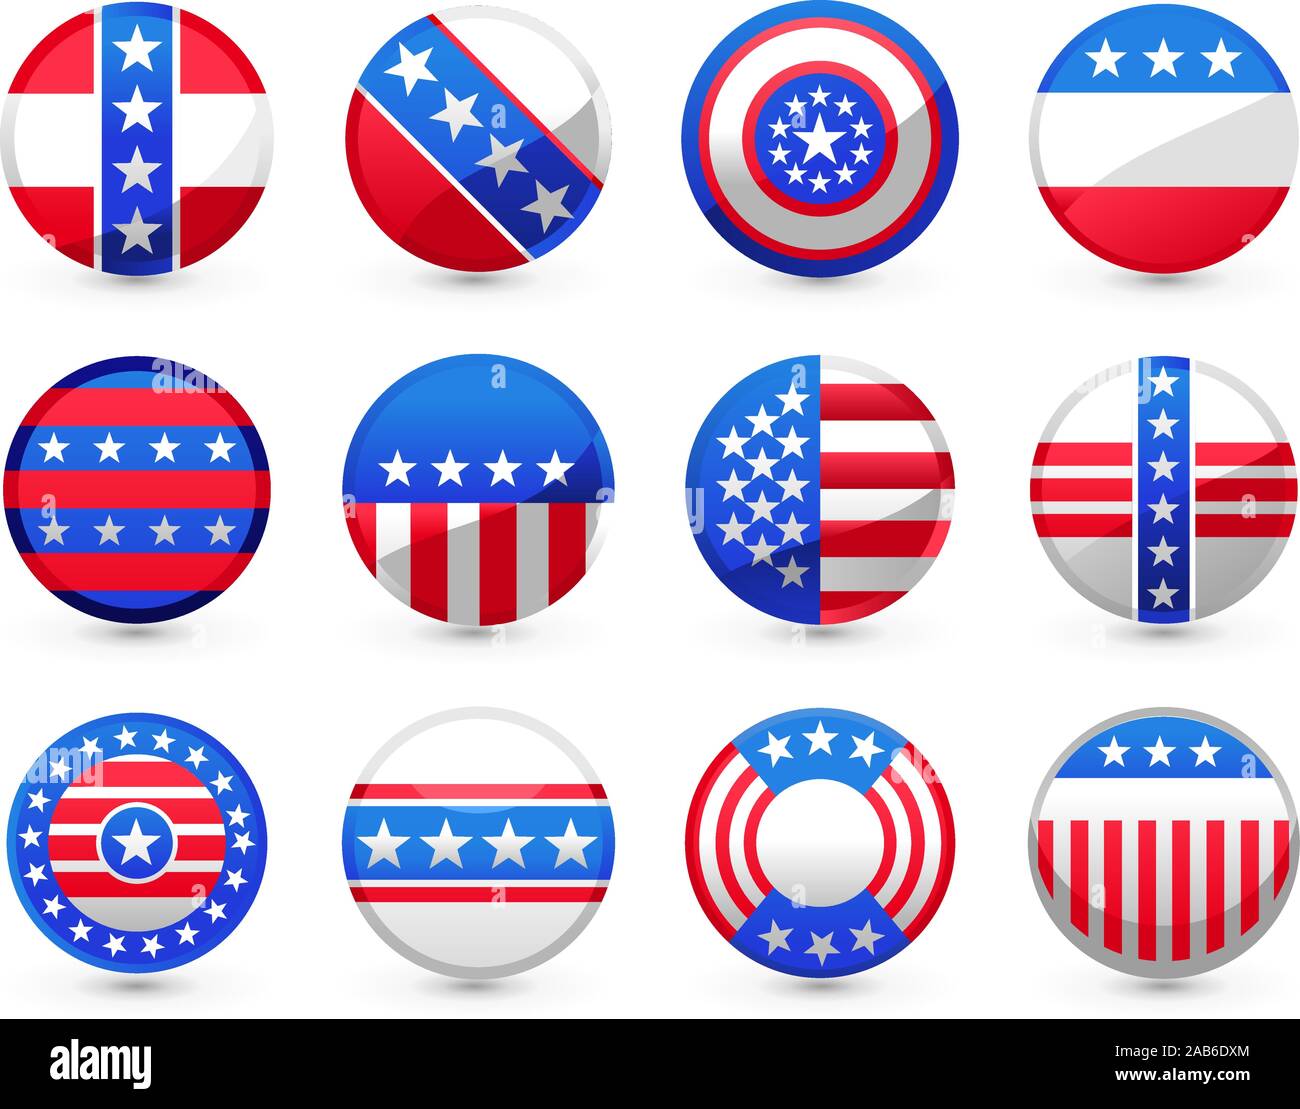 12 Boutons USA dans différents motifs américains vector illustration, en rouge et bleu, avec des étoiles blanches et drapeau américain. Illustration de Vecteur